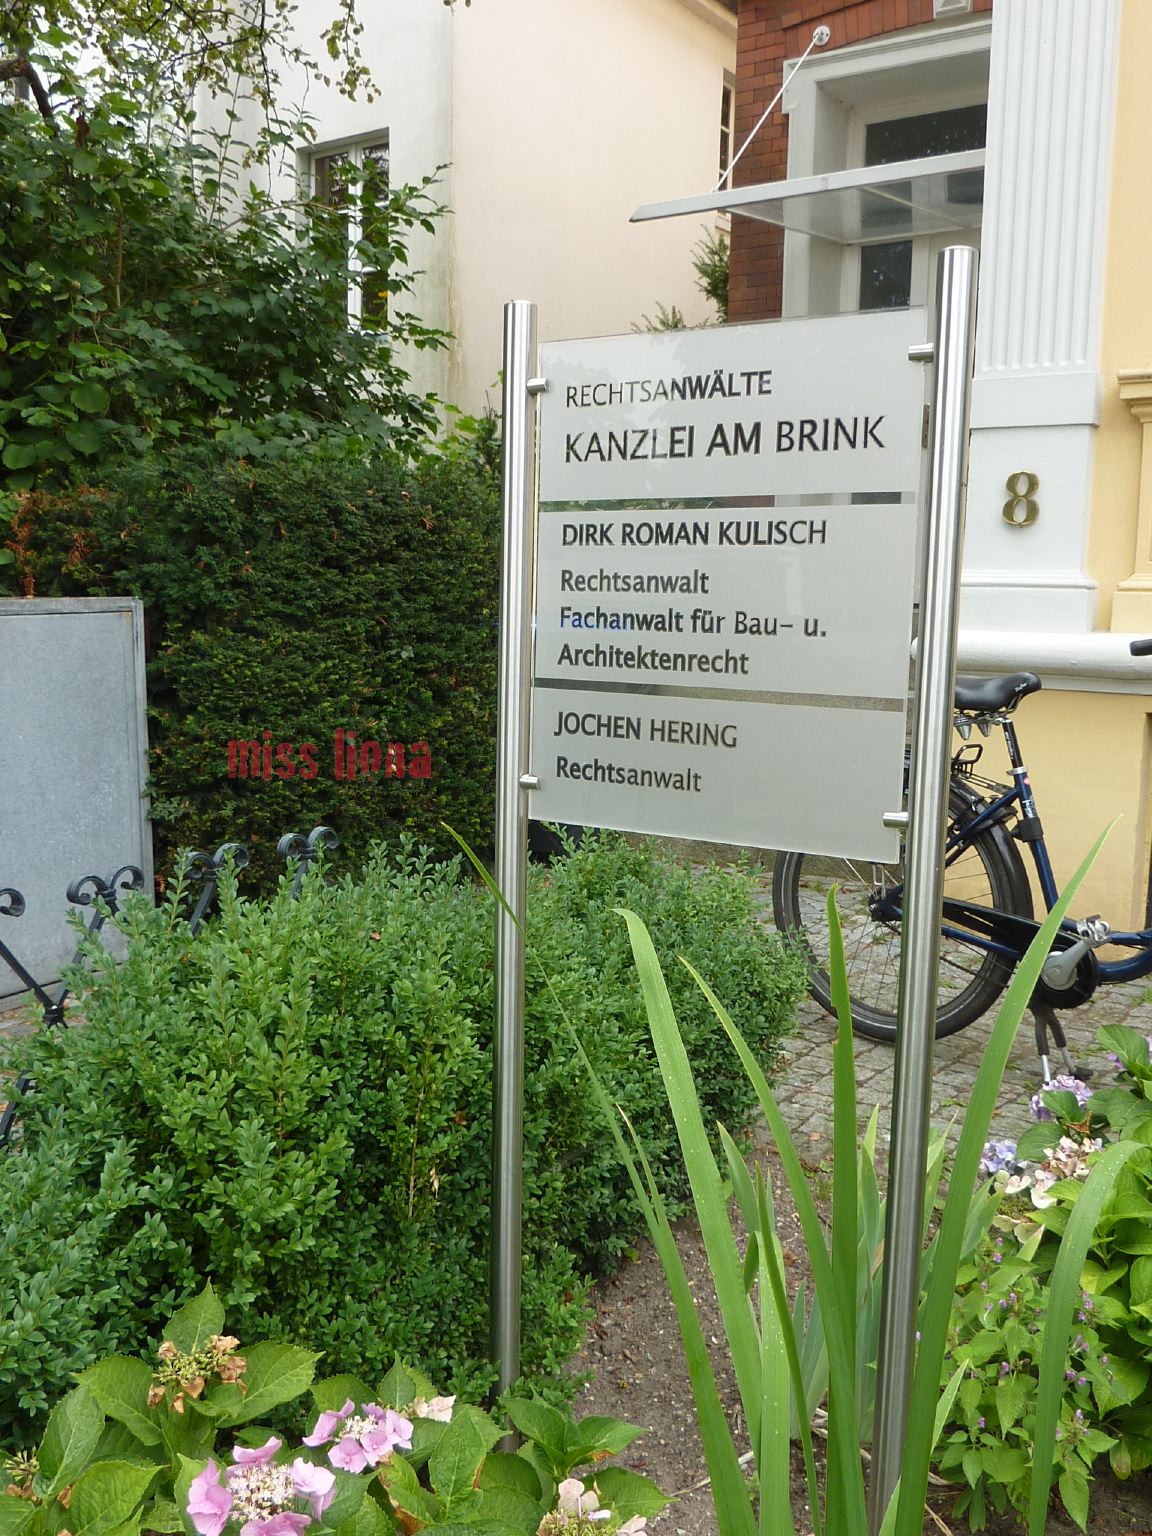 Bild 1 Kanzlei am Brink in Lübeck